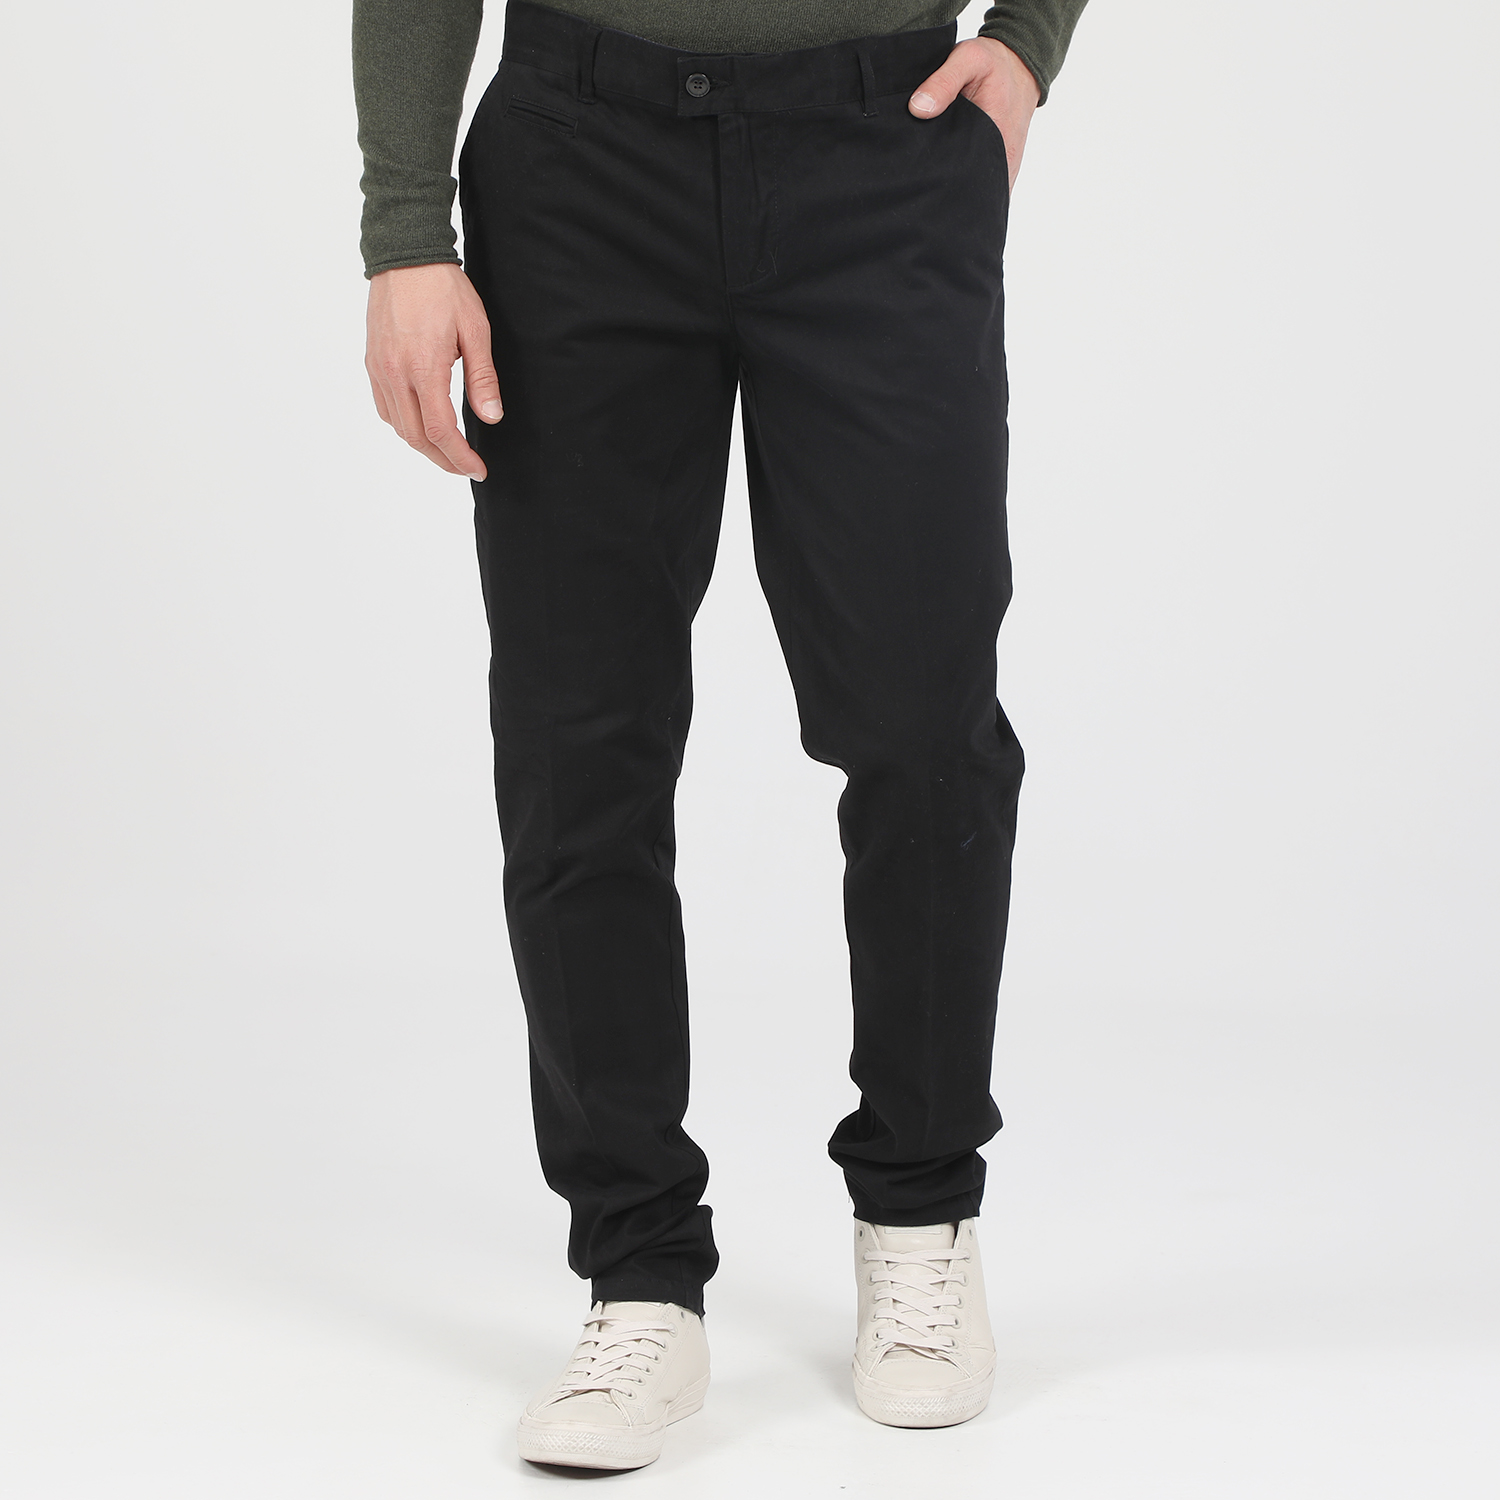 Ανδρικά/Ρούχα/Παντελόνια/Chinos MARTIN & CO - Ανδρικό παντελόνι MARTIN & CO SLIM CHINOS μαύρο